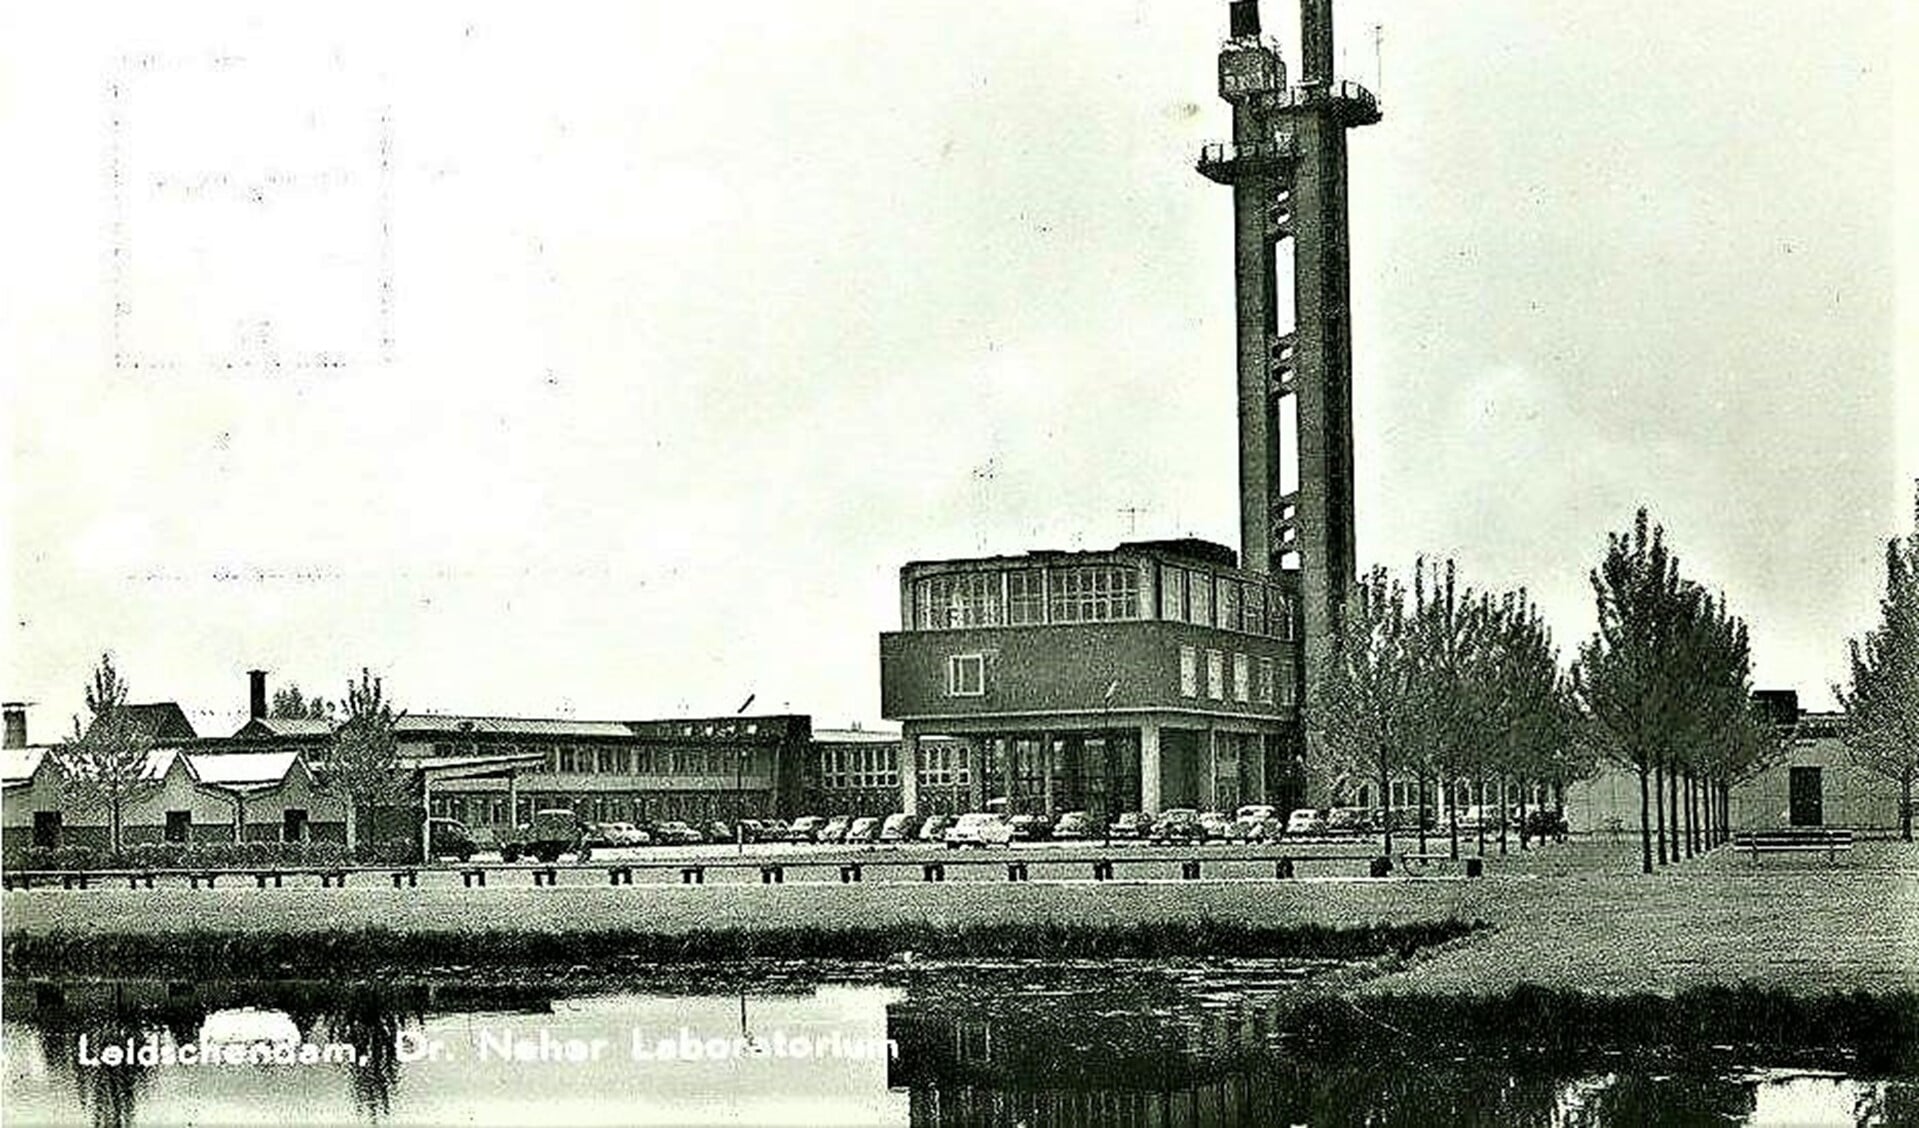 Het Dr. Neherlaboratorium in Leidschendam, toen nog niet omringd door bebouwing (archieffoto).